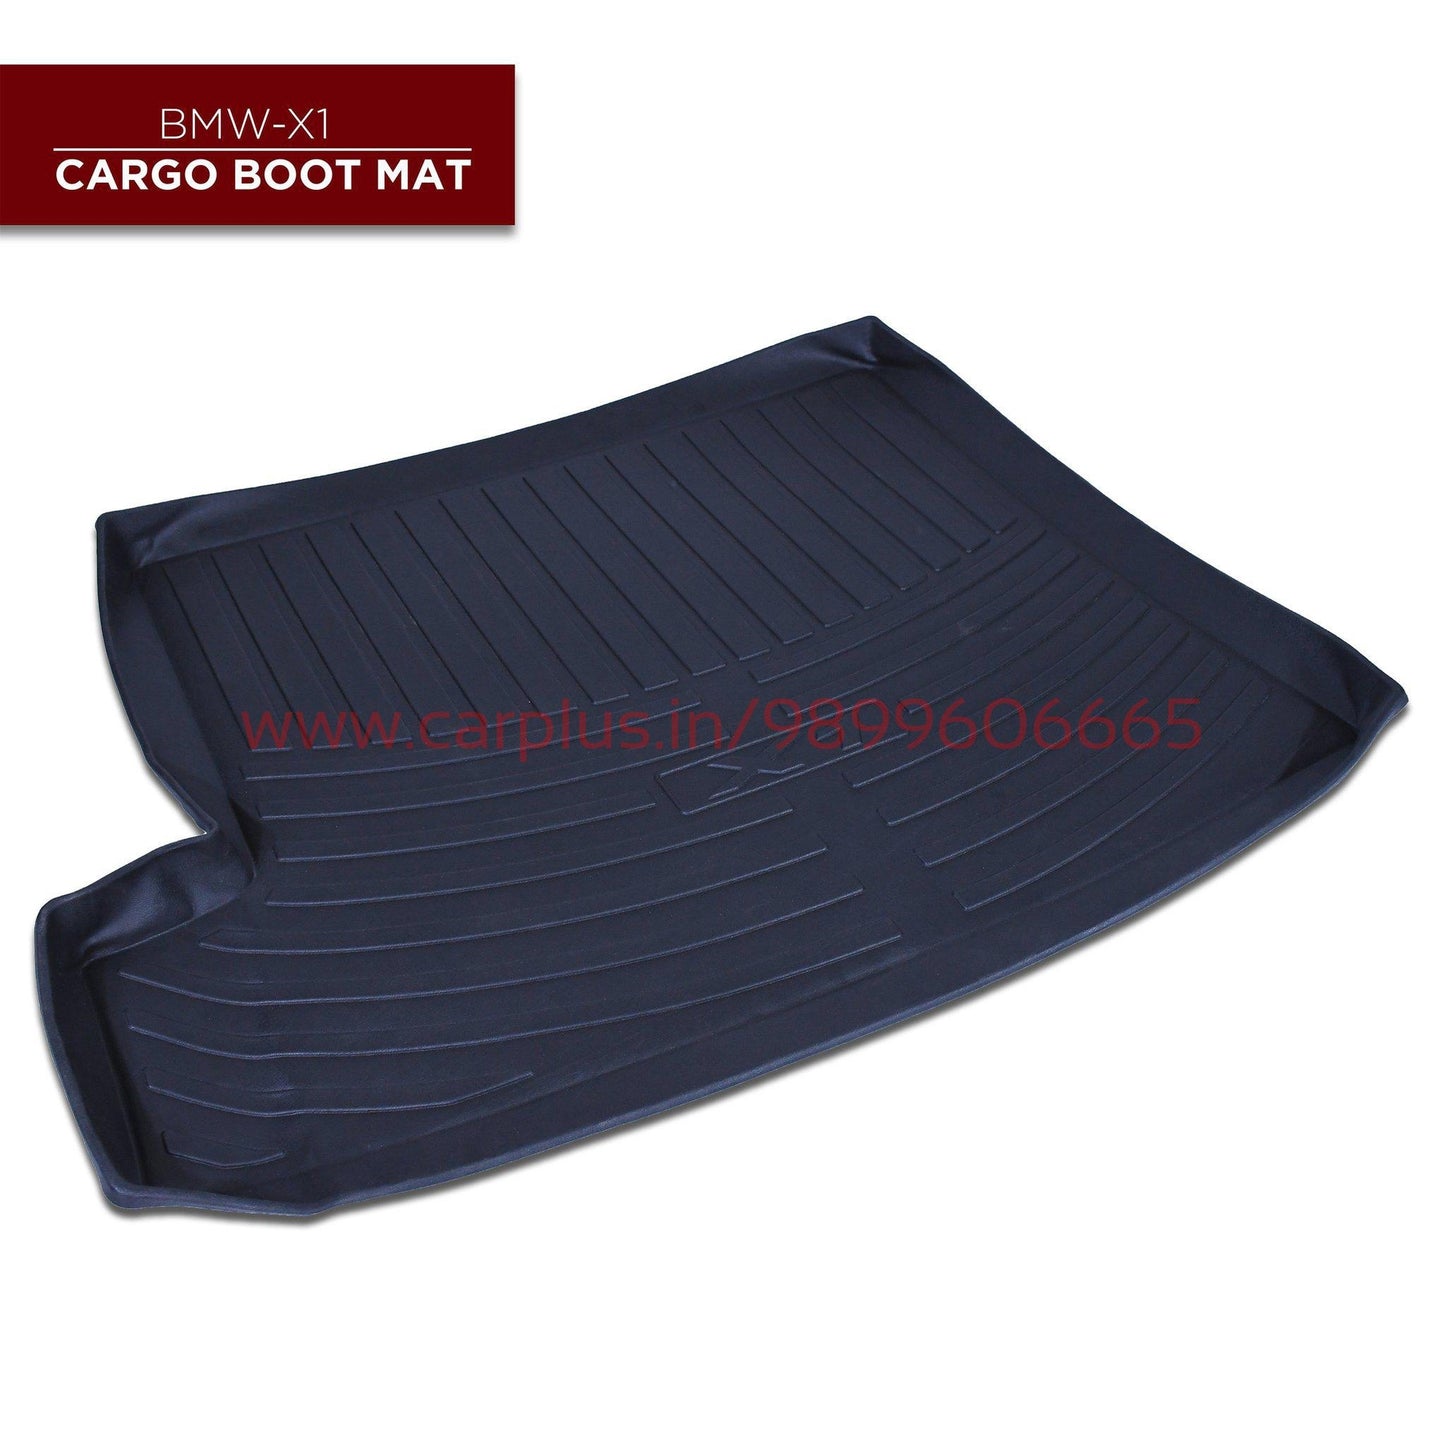 
                  
                    KMH Cargo Boot Mat For BMW X1 (2013) KMH-CARGO BOOT MATS CARGO BOOT MATS.
                  
                